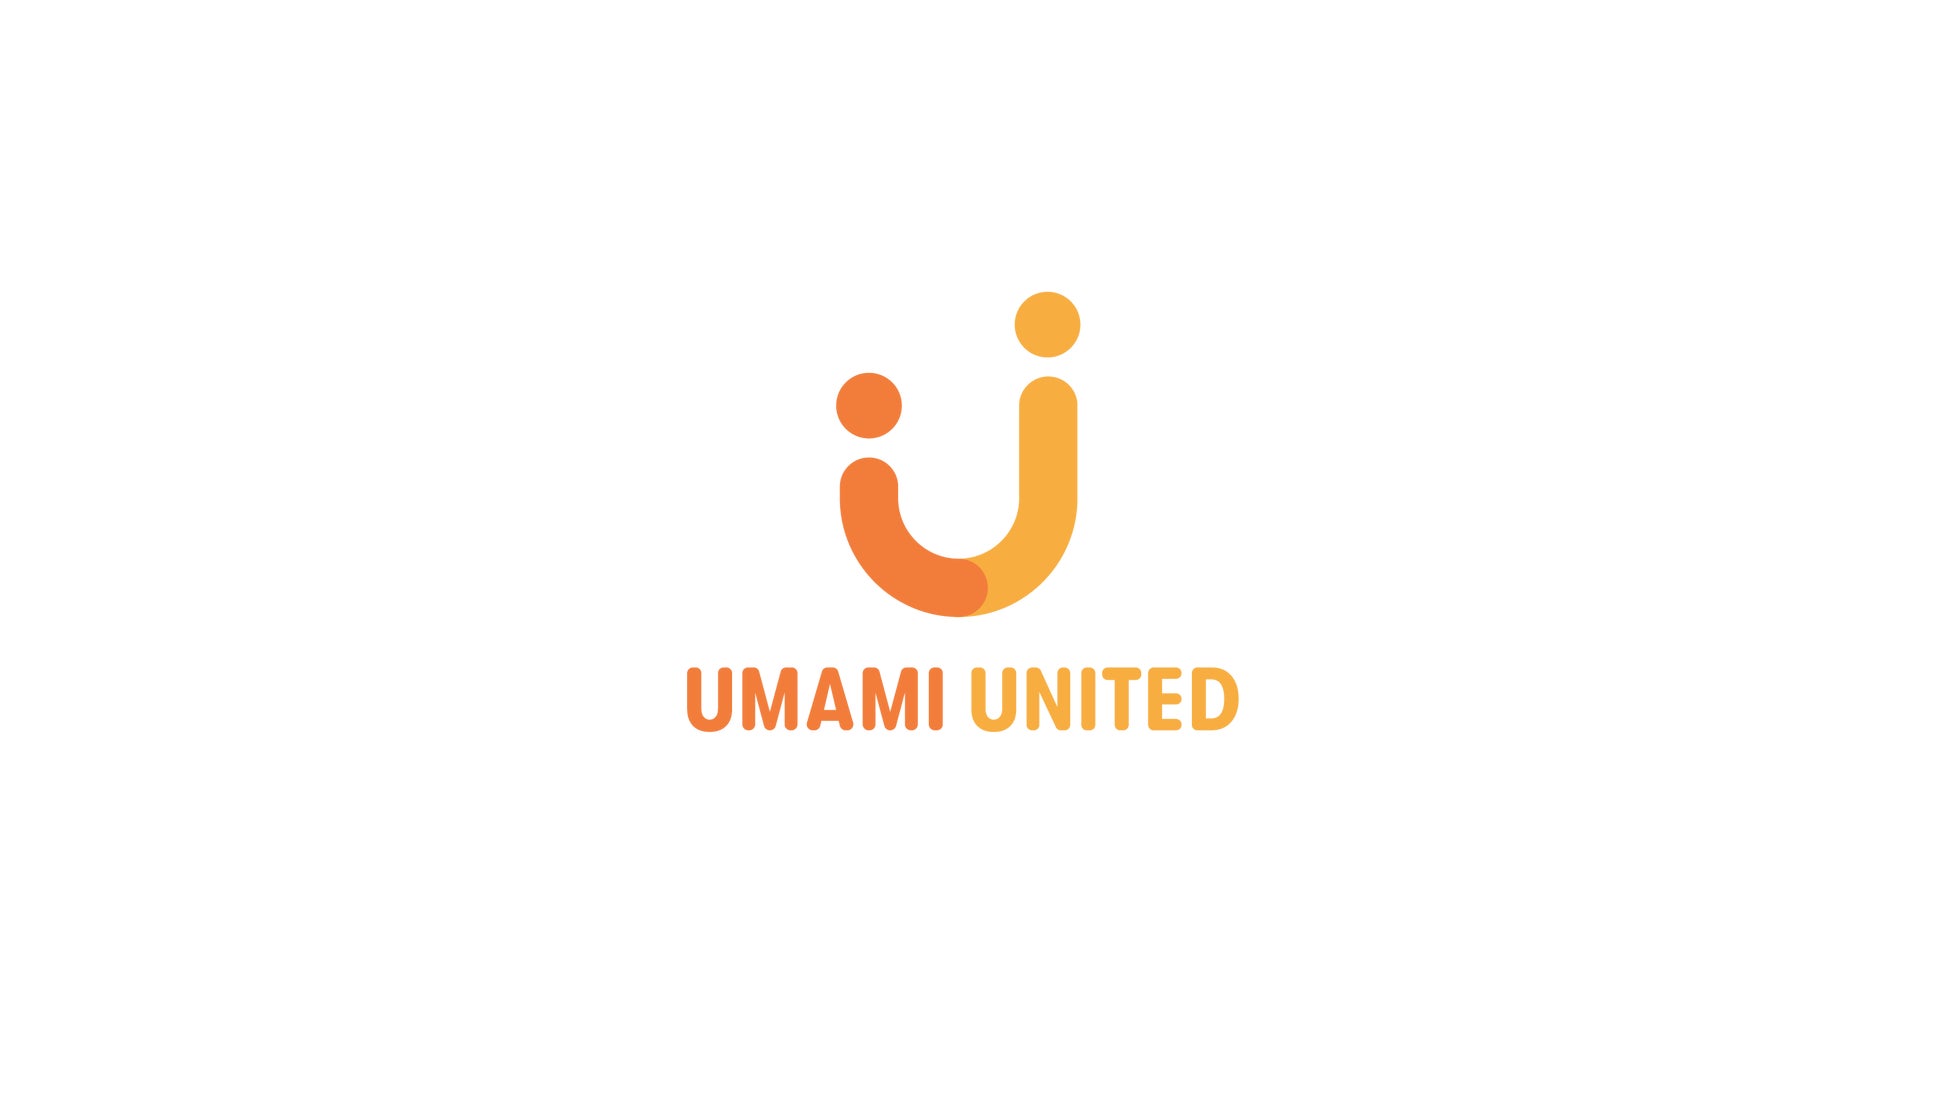 【資金調達】植物性卵「UMAMI UNITED」プレシリーズAで2.4億円 資金調達実施のサブ画像5